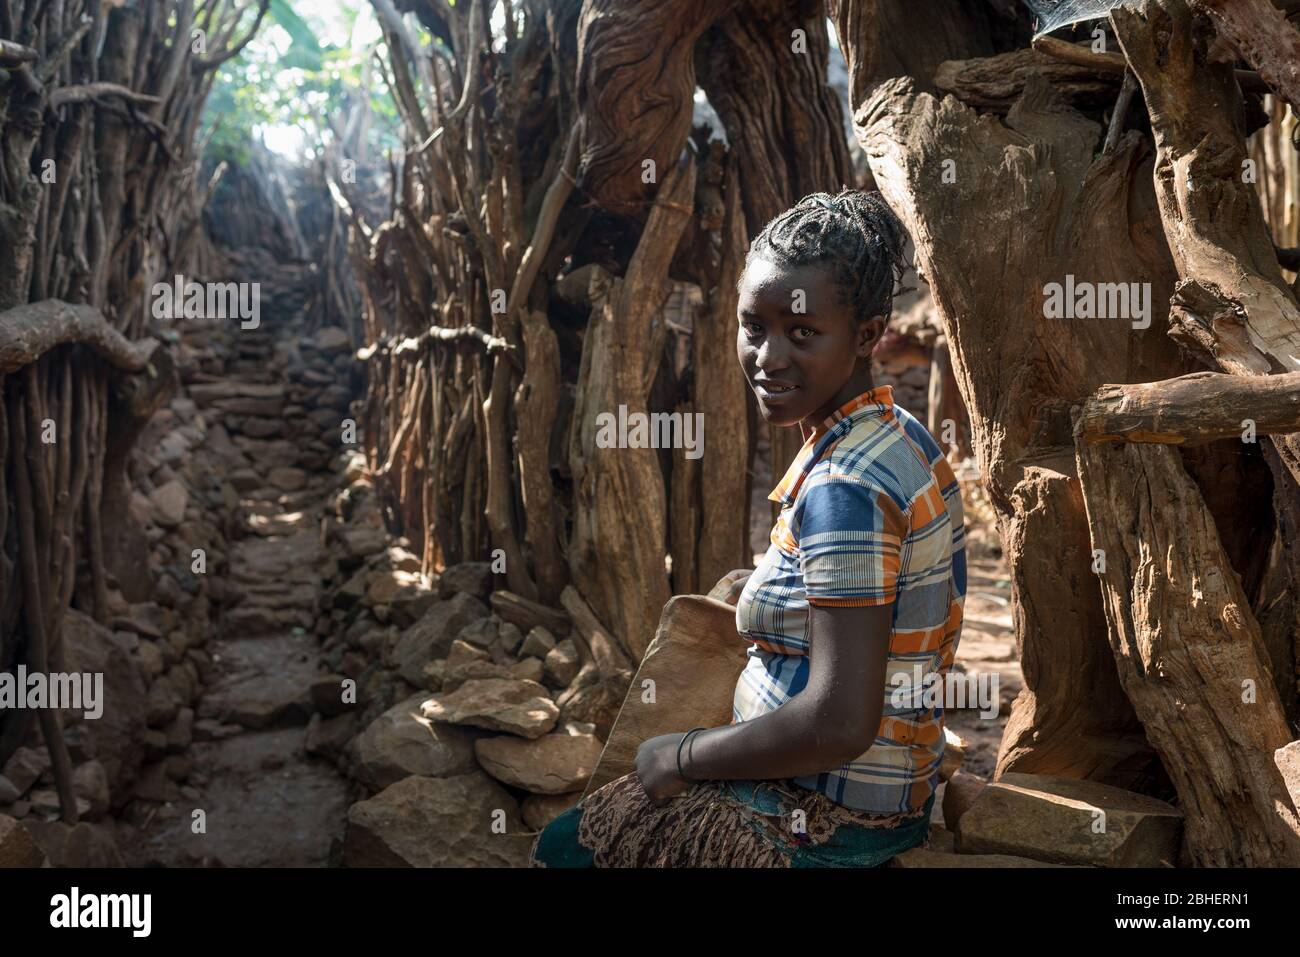 La giovane donna riposa fuori del suo complesso familiare dopo aver scalato il percorso roccioso del villaggio, il gruppo etnico o la tribù Konso, il villaggio di Mecheno, Abra Minch, Etiopia. Foto Stock